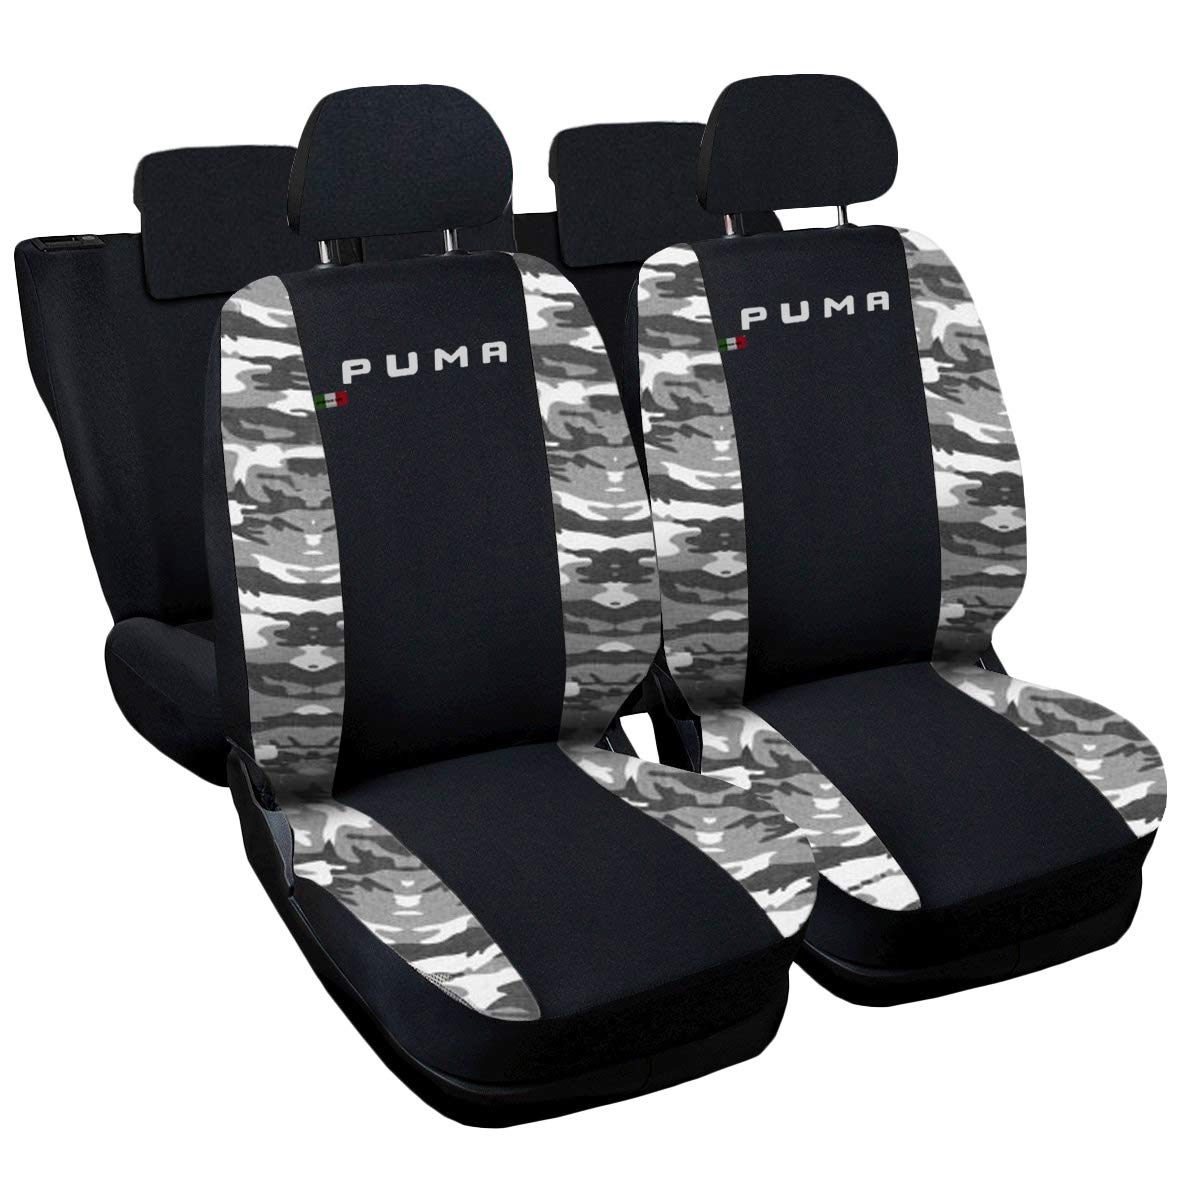 Lupex Shop N.Mch Sitzbezüge, kompatibel mit Puma, Schwarz/Camouflage von Lupex Shop